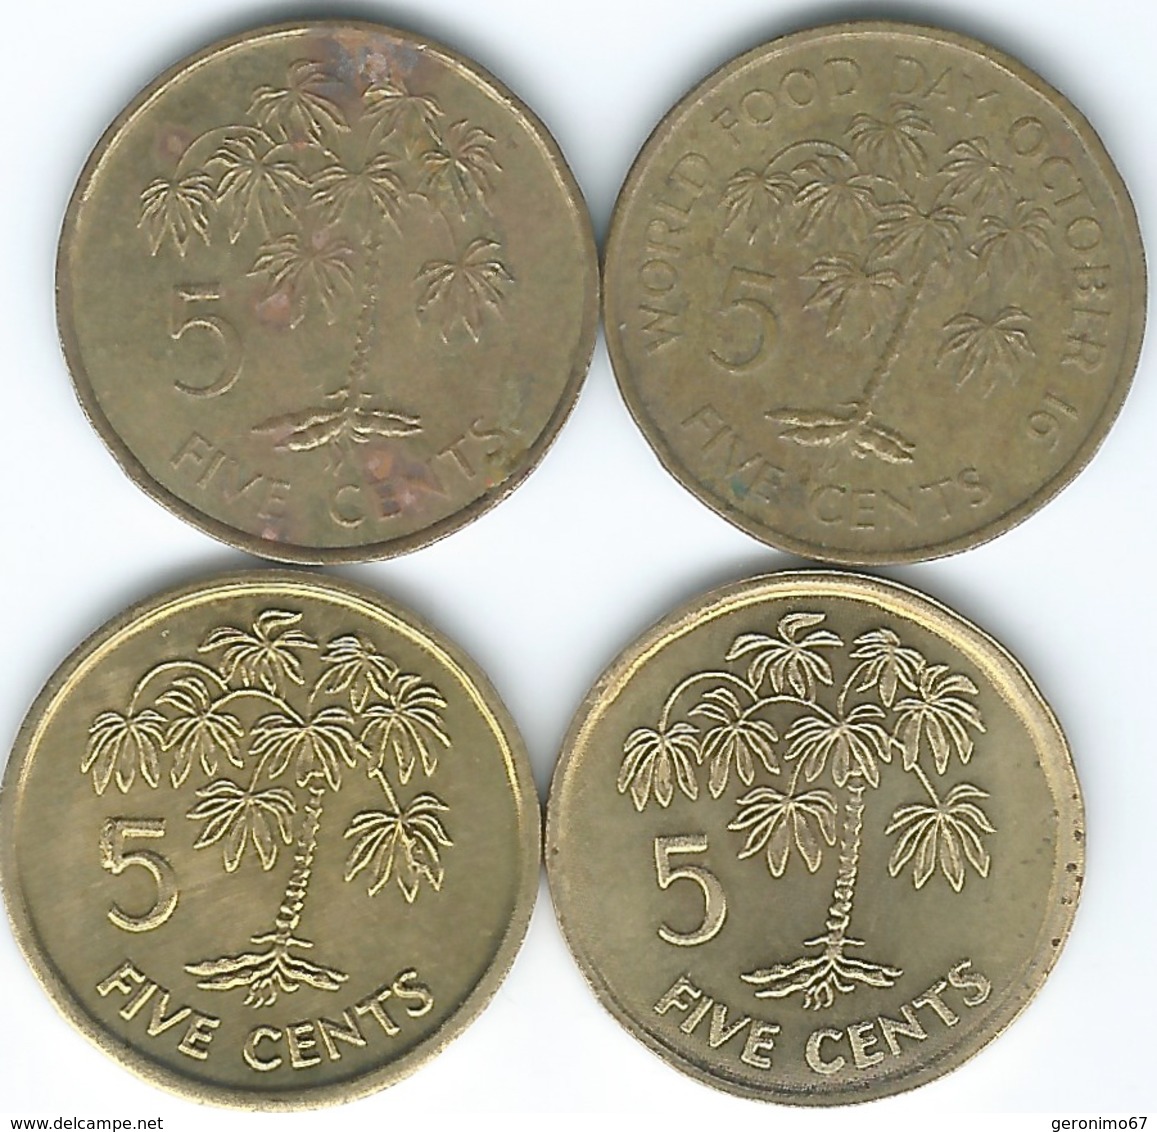 Seychelles - 5 Cents - 1981 (KM43) 1982 (KM47.1) 2003 (KM47.2) & 2007 (magnetic - KM47a) - Seychelles